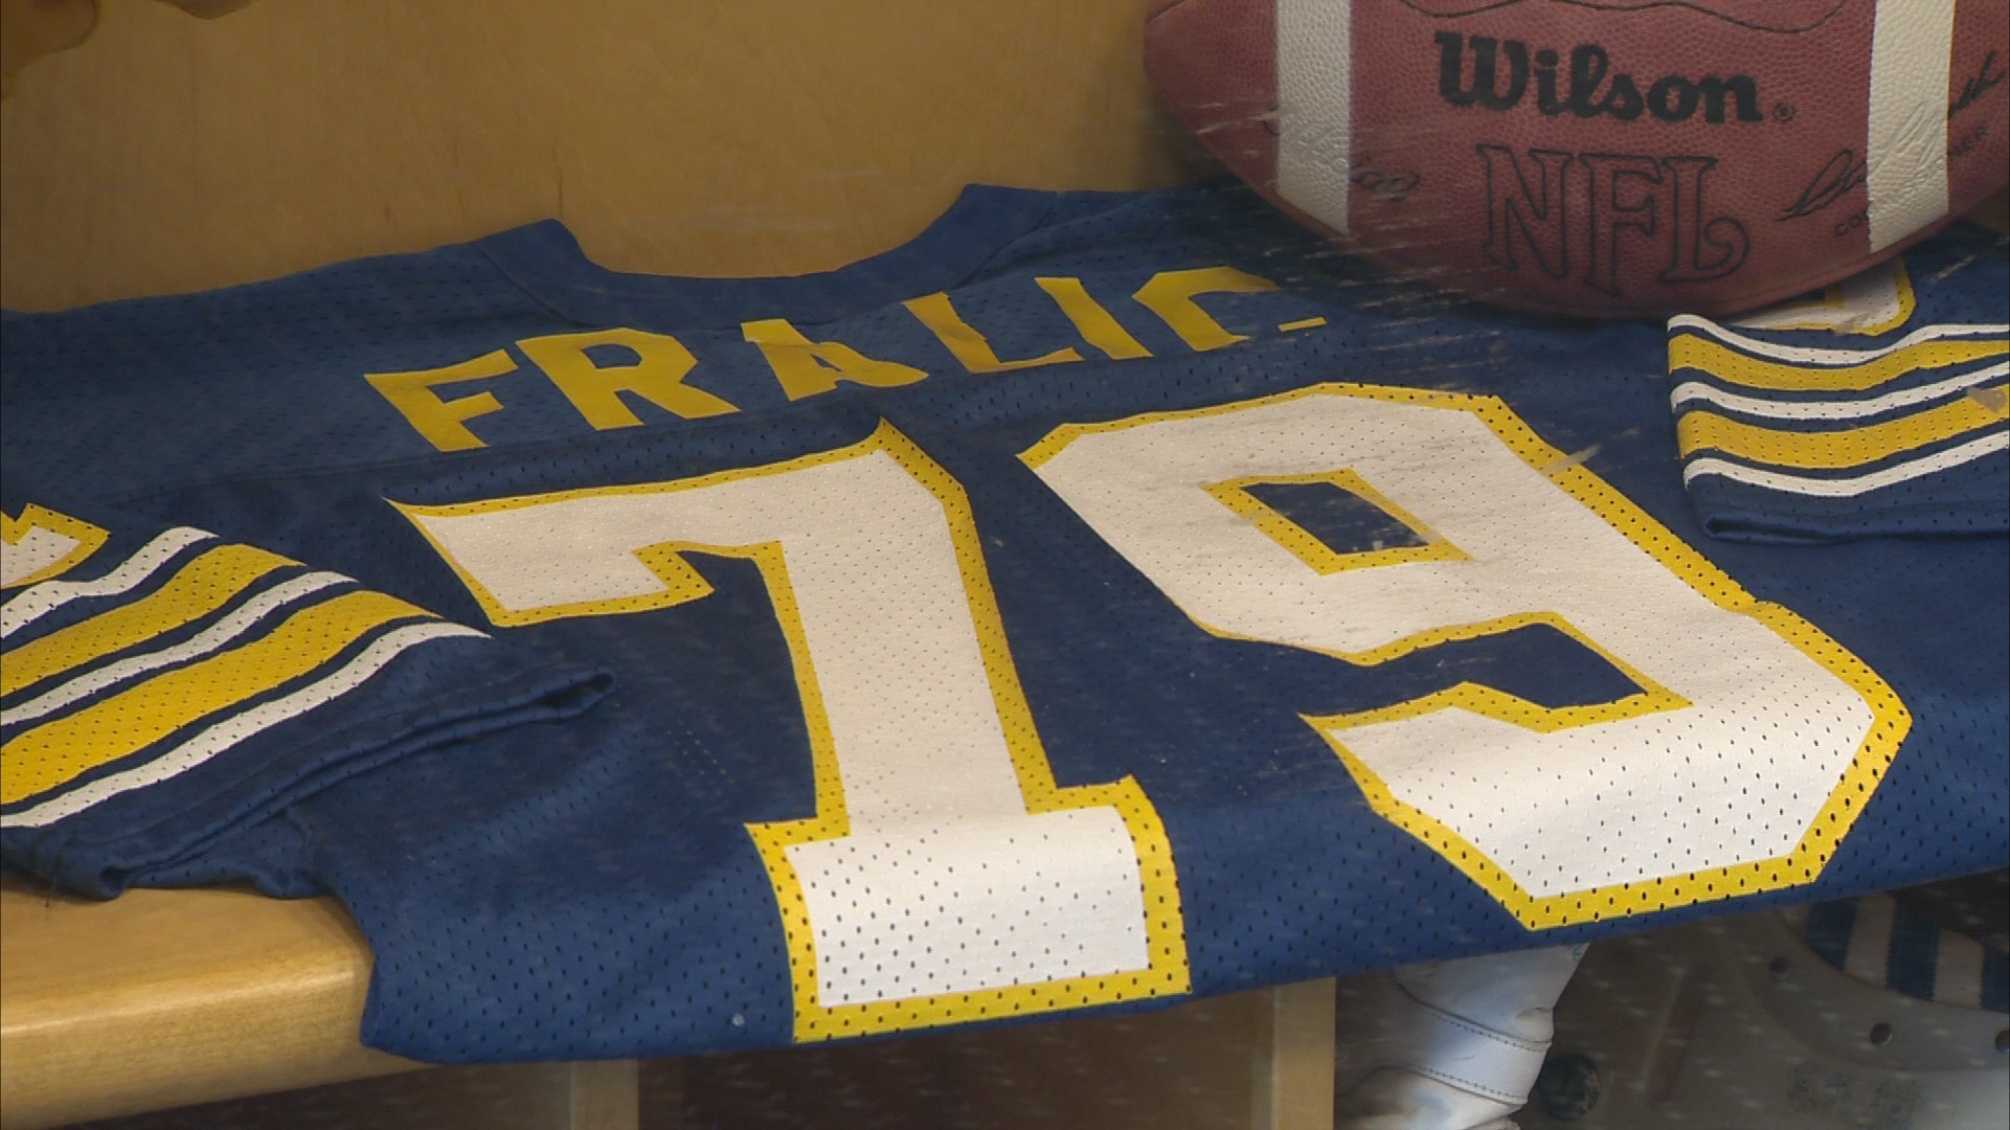 Former Atlanta Falcons All-Pro Bill Fralic dead at 56